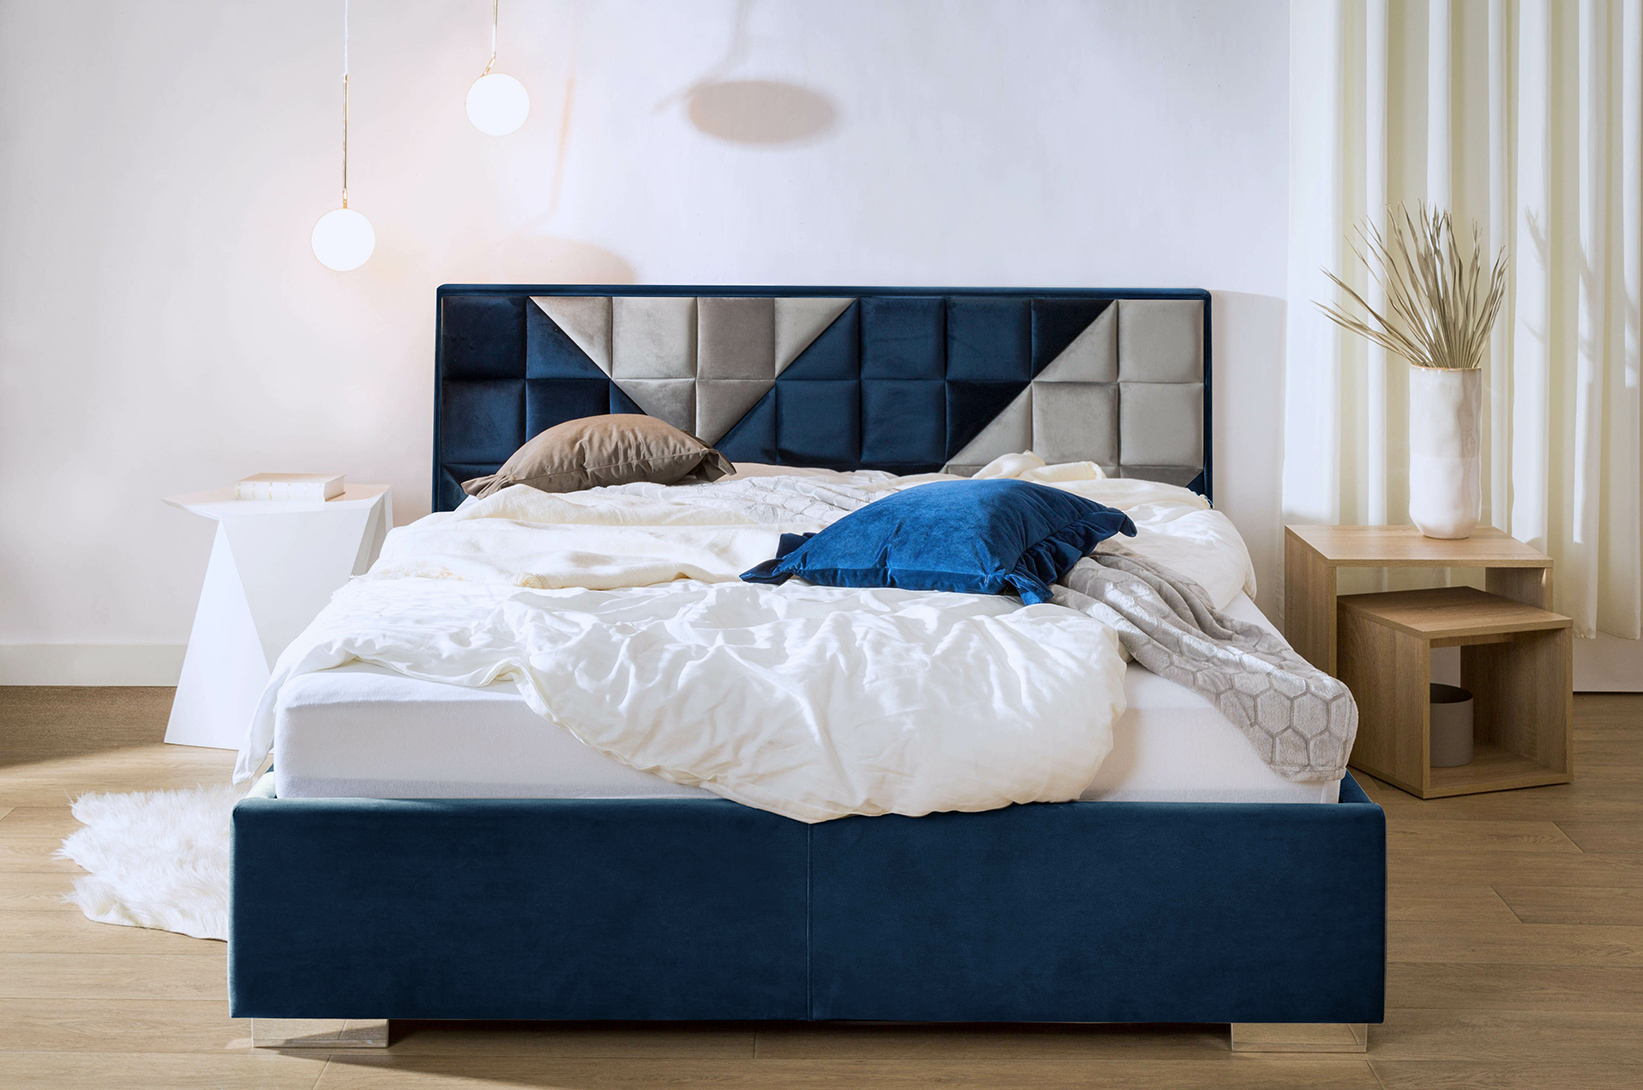 Skrzypiące łóżko – dlaczego posłanie skrzypi i co zrobić, by temu zaradzić?